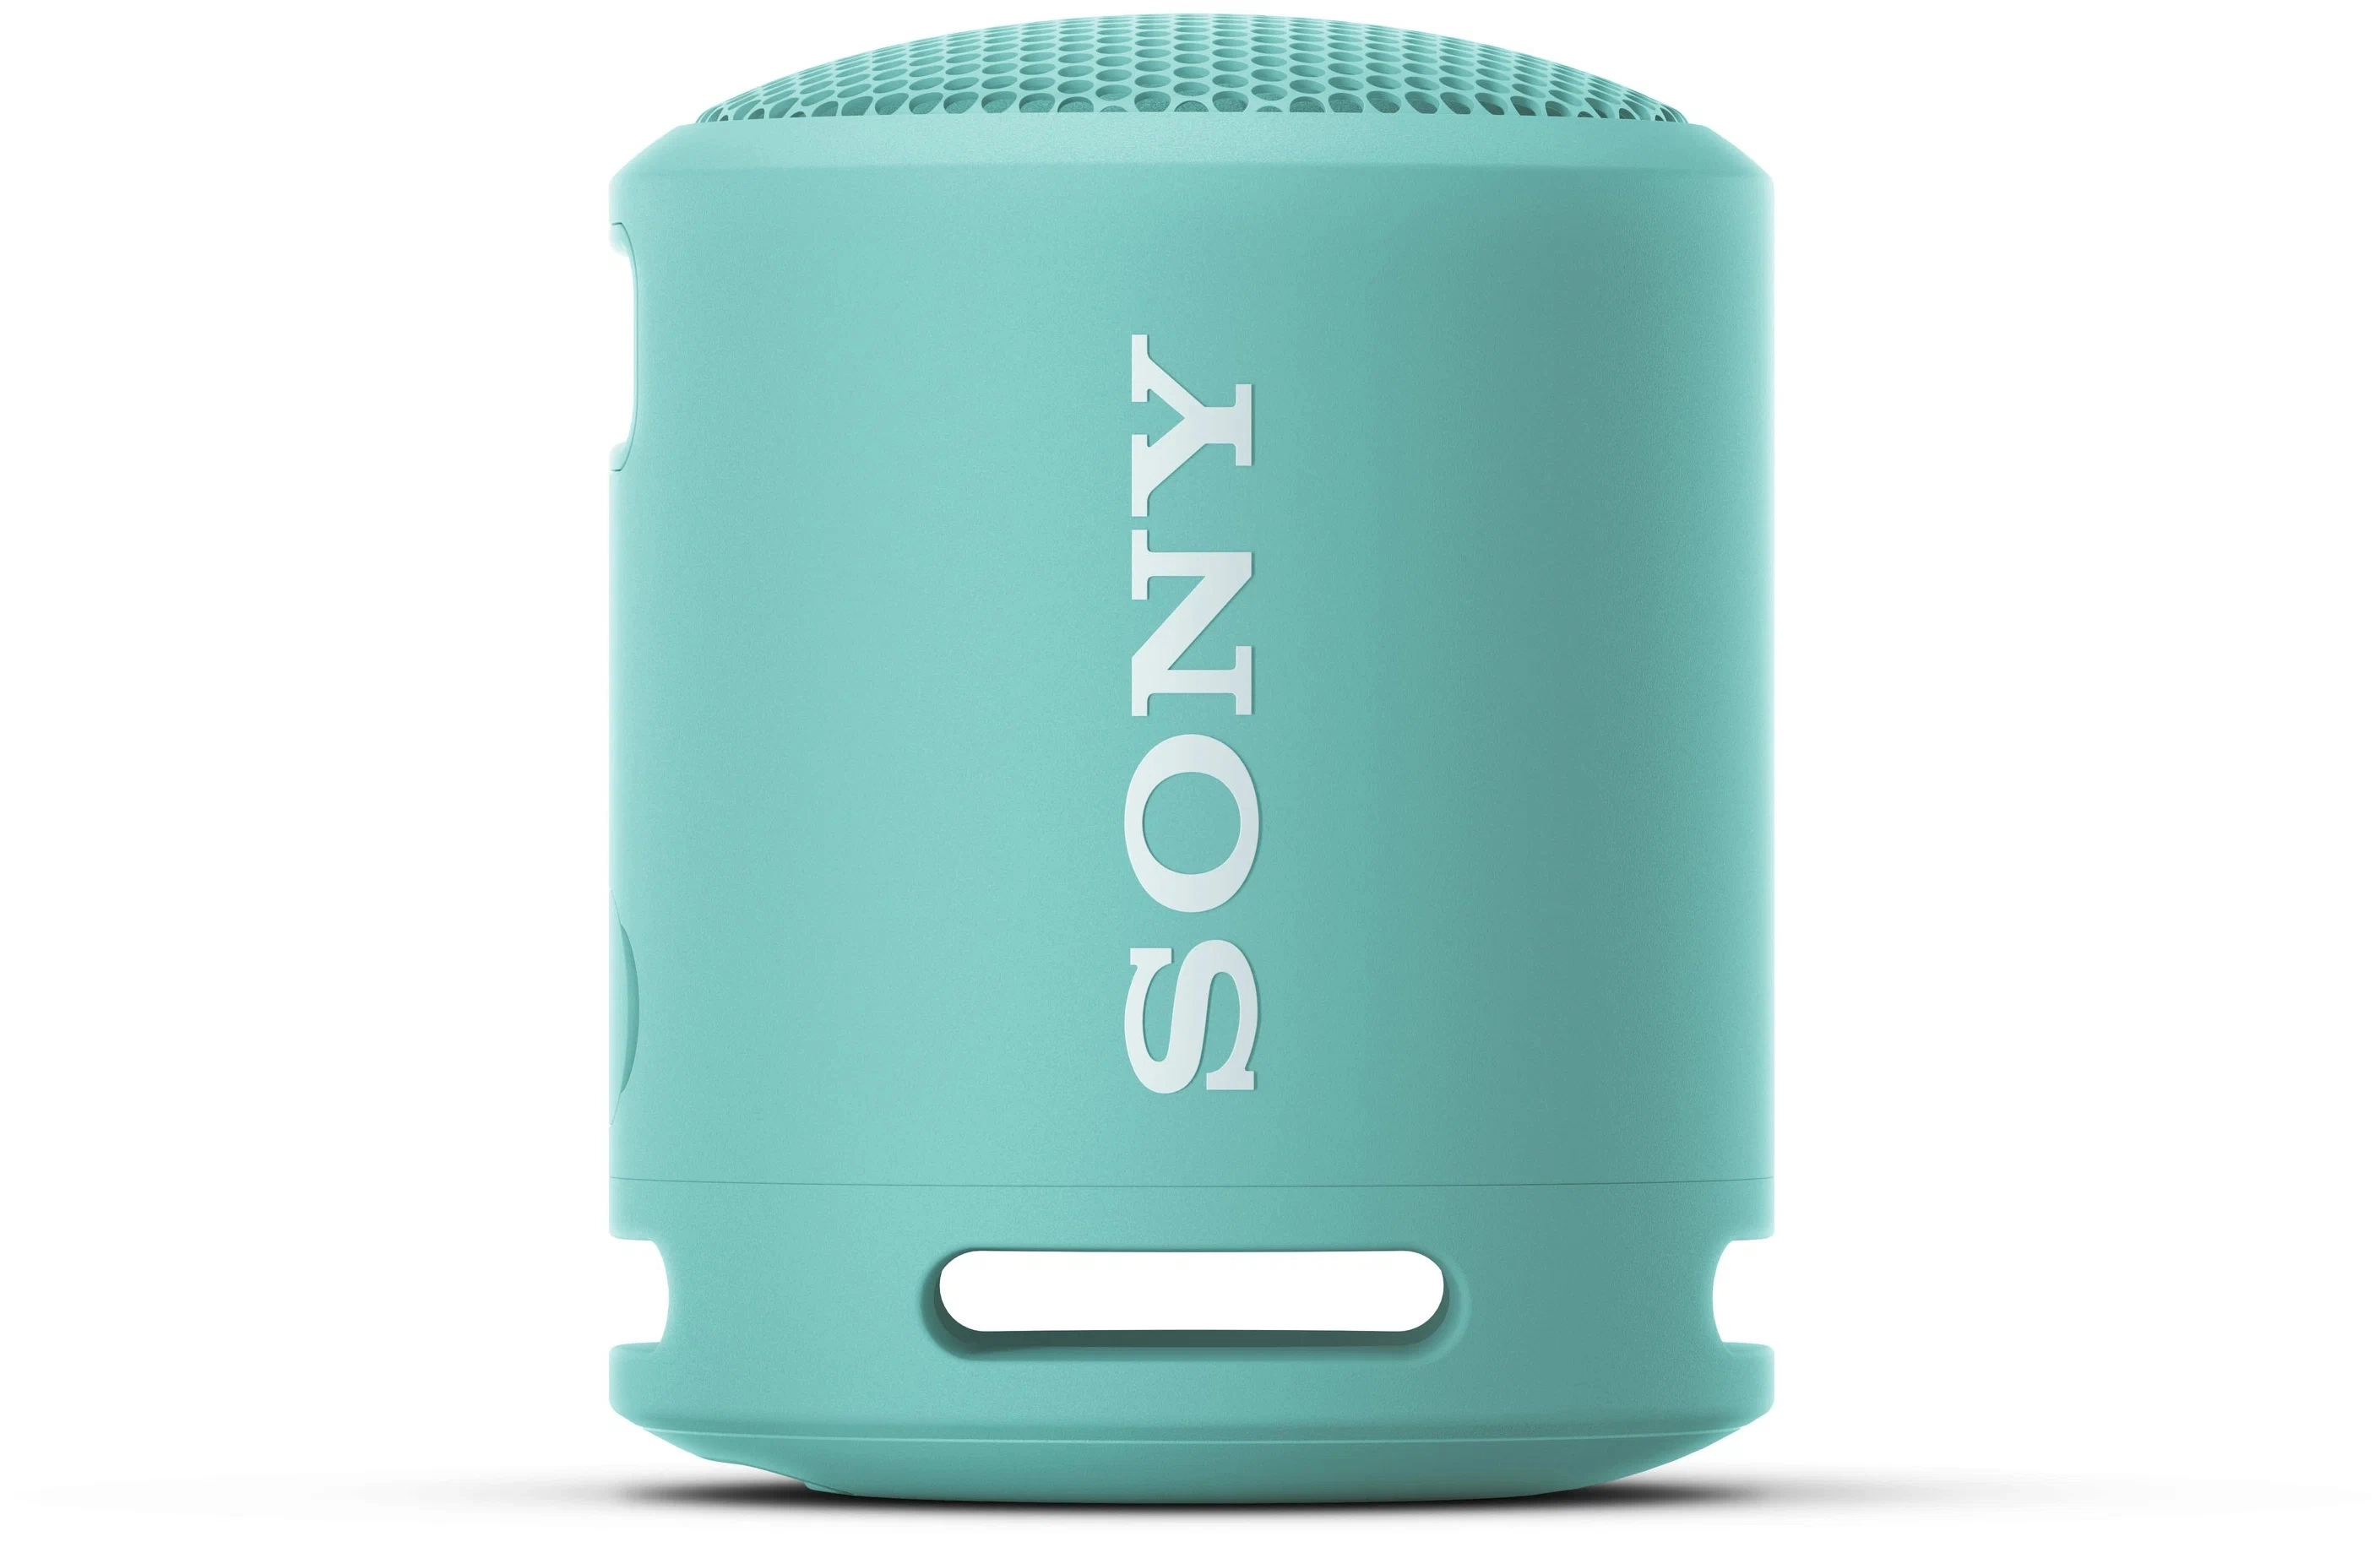 Портативная акустика Sony SRS-XB13 Black, Beige, Blue